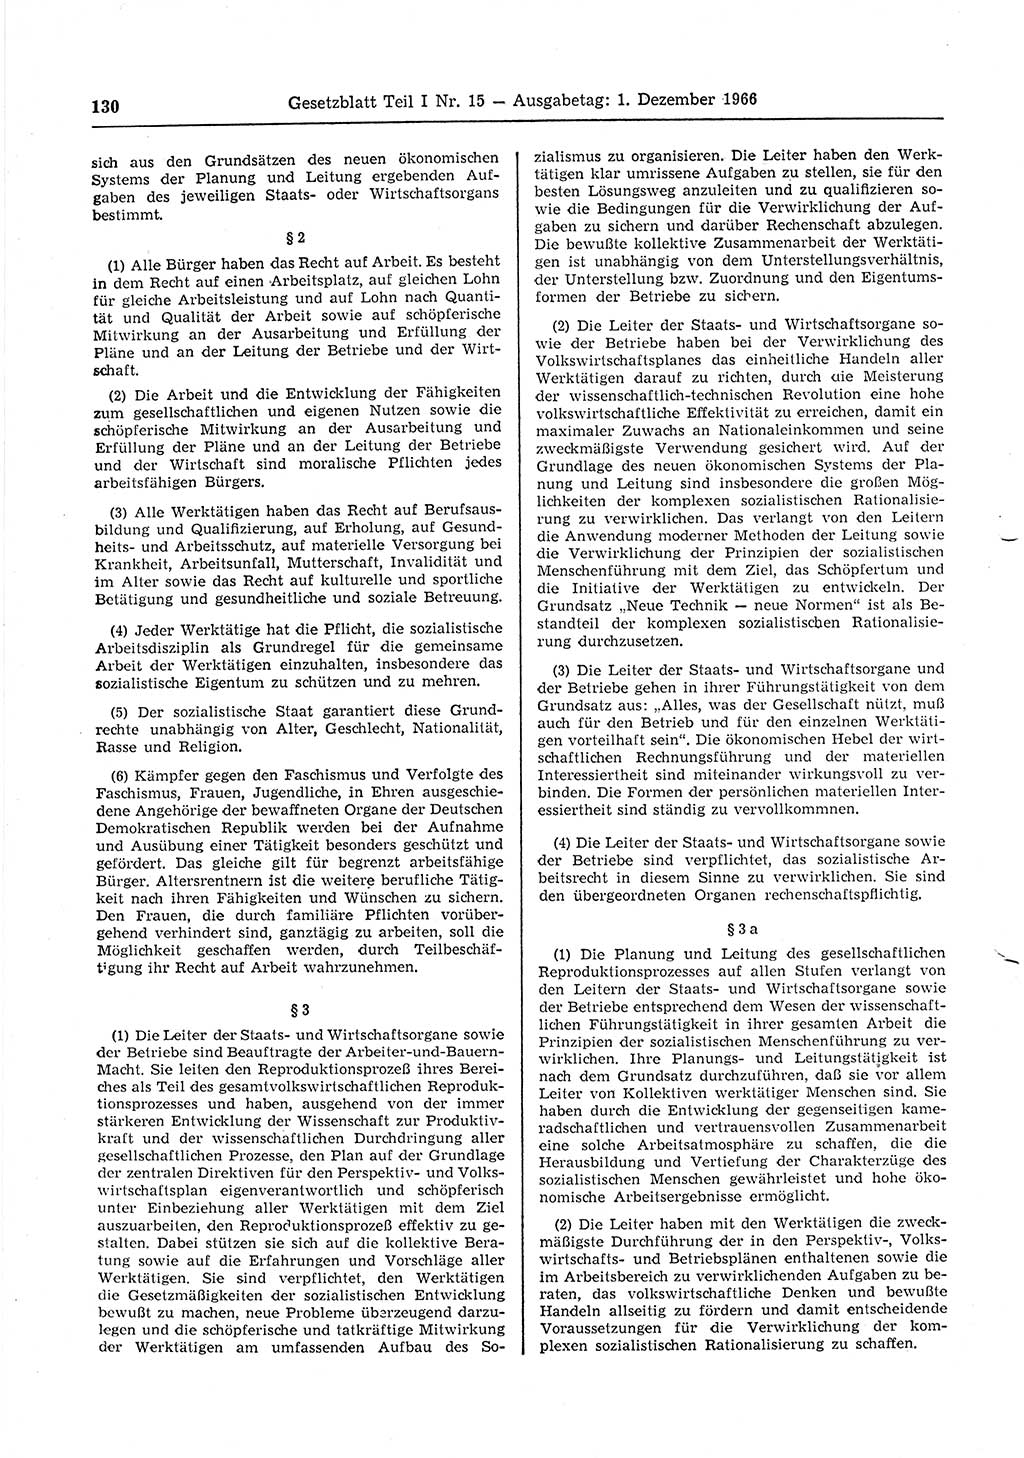 Gesetzblatt (GBl.) der Deutschen Demokratischen Republik (DDR) Teil Ⅰ 1966, Seite 130 (GBl. DDR Ⅰ 1966, S. 130)